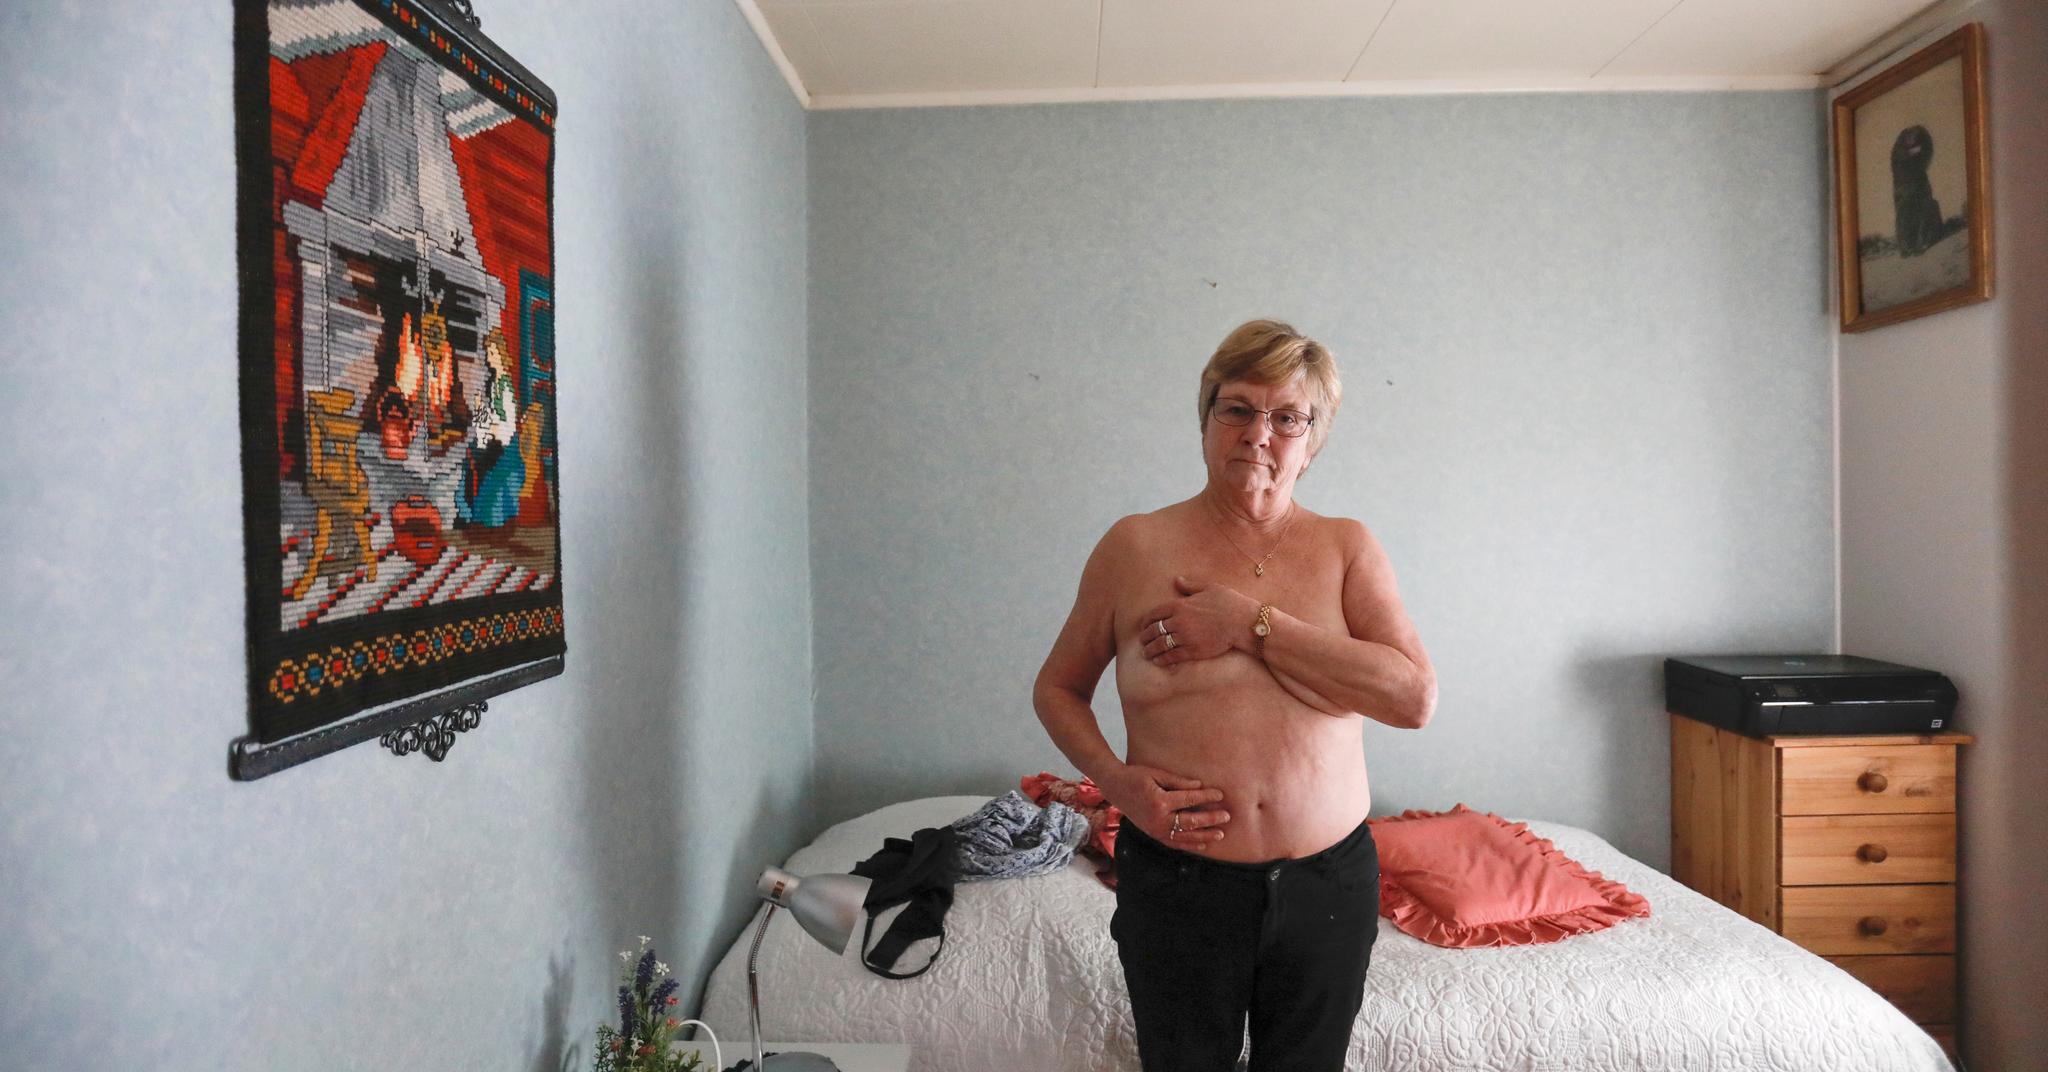 Karin Wenke Østhaug slet i 40 år med store smerter i høyre bryst, arm og skulder etter at hun fikk operert inn silikonimplantater da hun var i 20-årene. Da hun for to år siden fjernet implantatene og fikk operert inn fett og vev fra mageregionen, forsvant smertene.